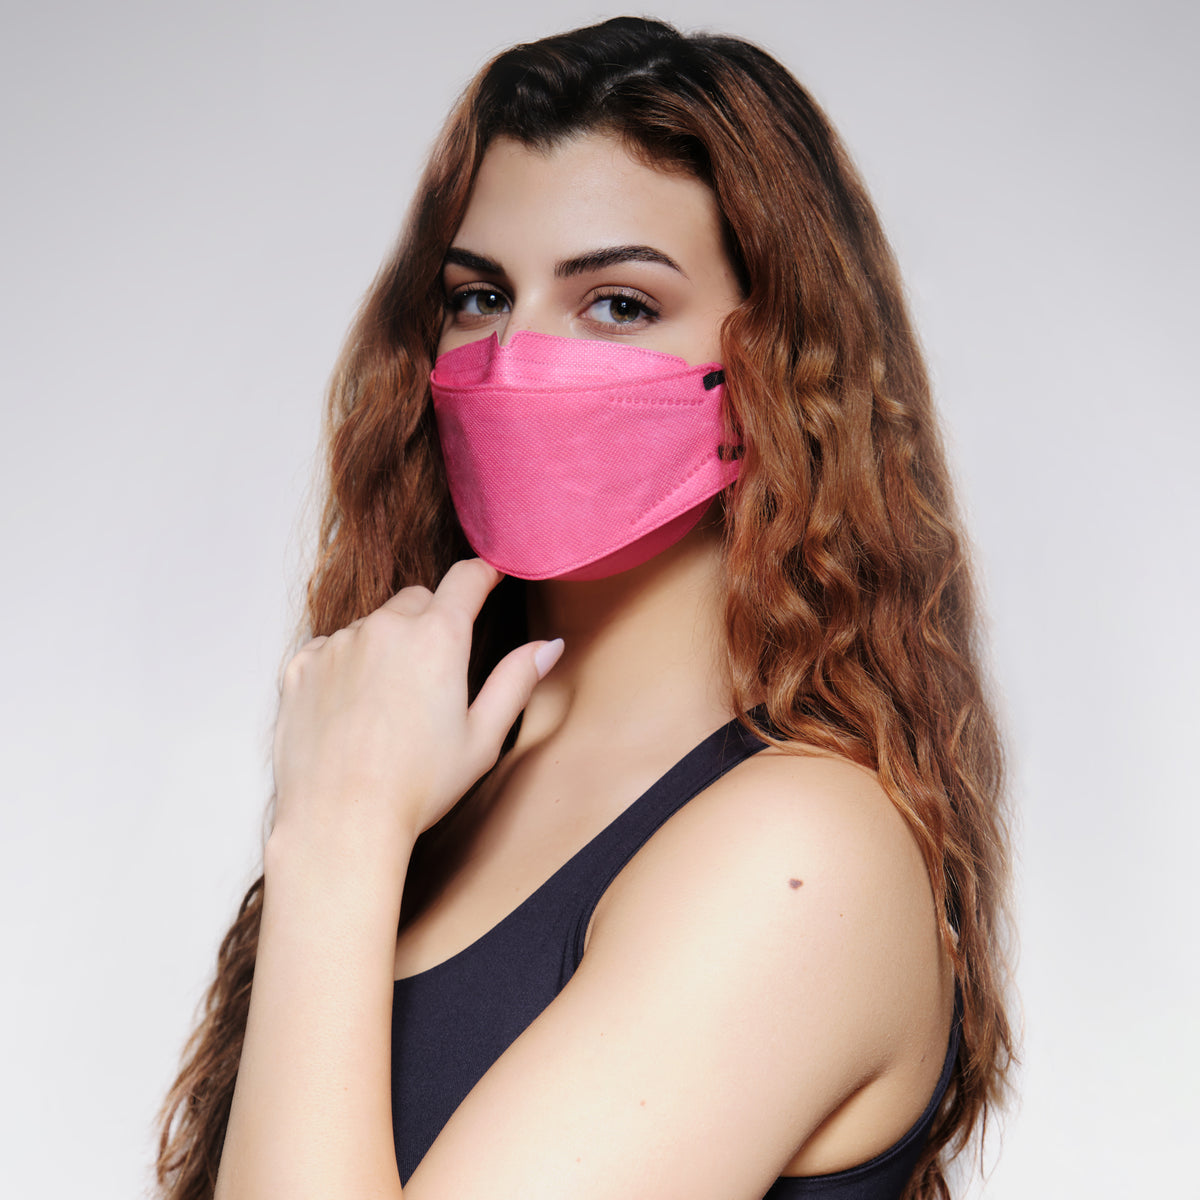 KN95 Respirator Face Mask - Pink